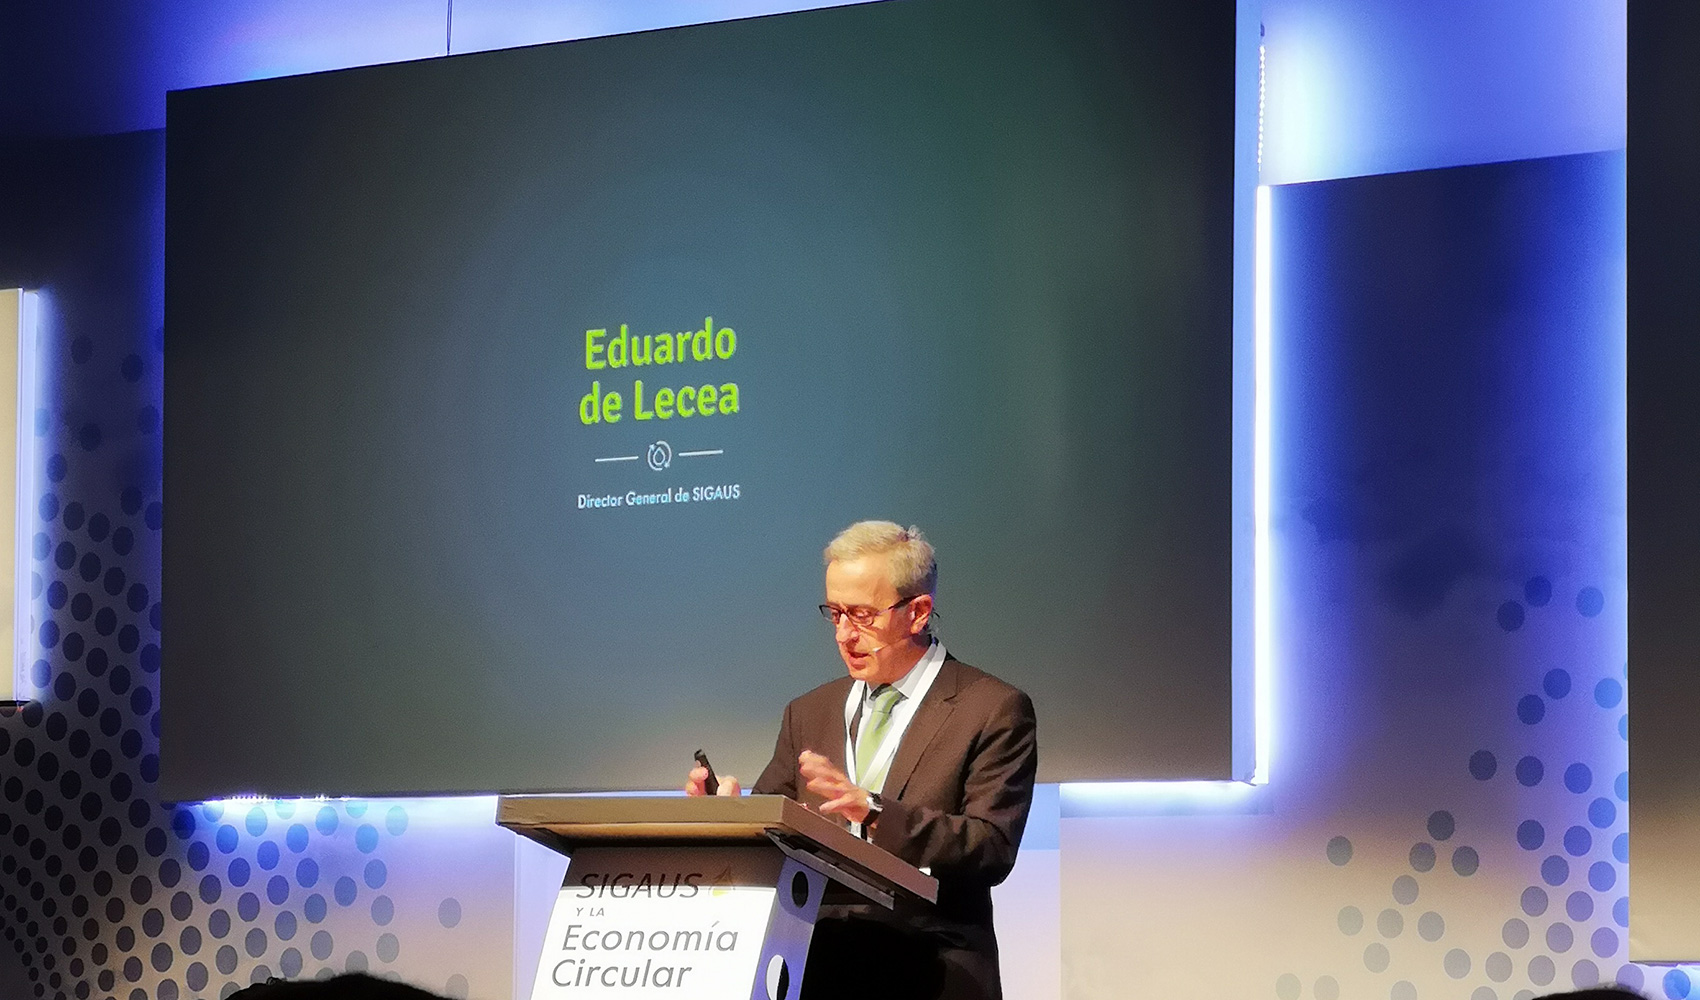 La ponencia central del evento corri a cargo de Eduardo de Lecea, director general de Sigaus...